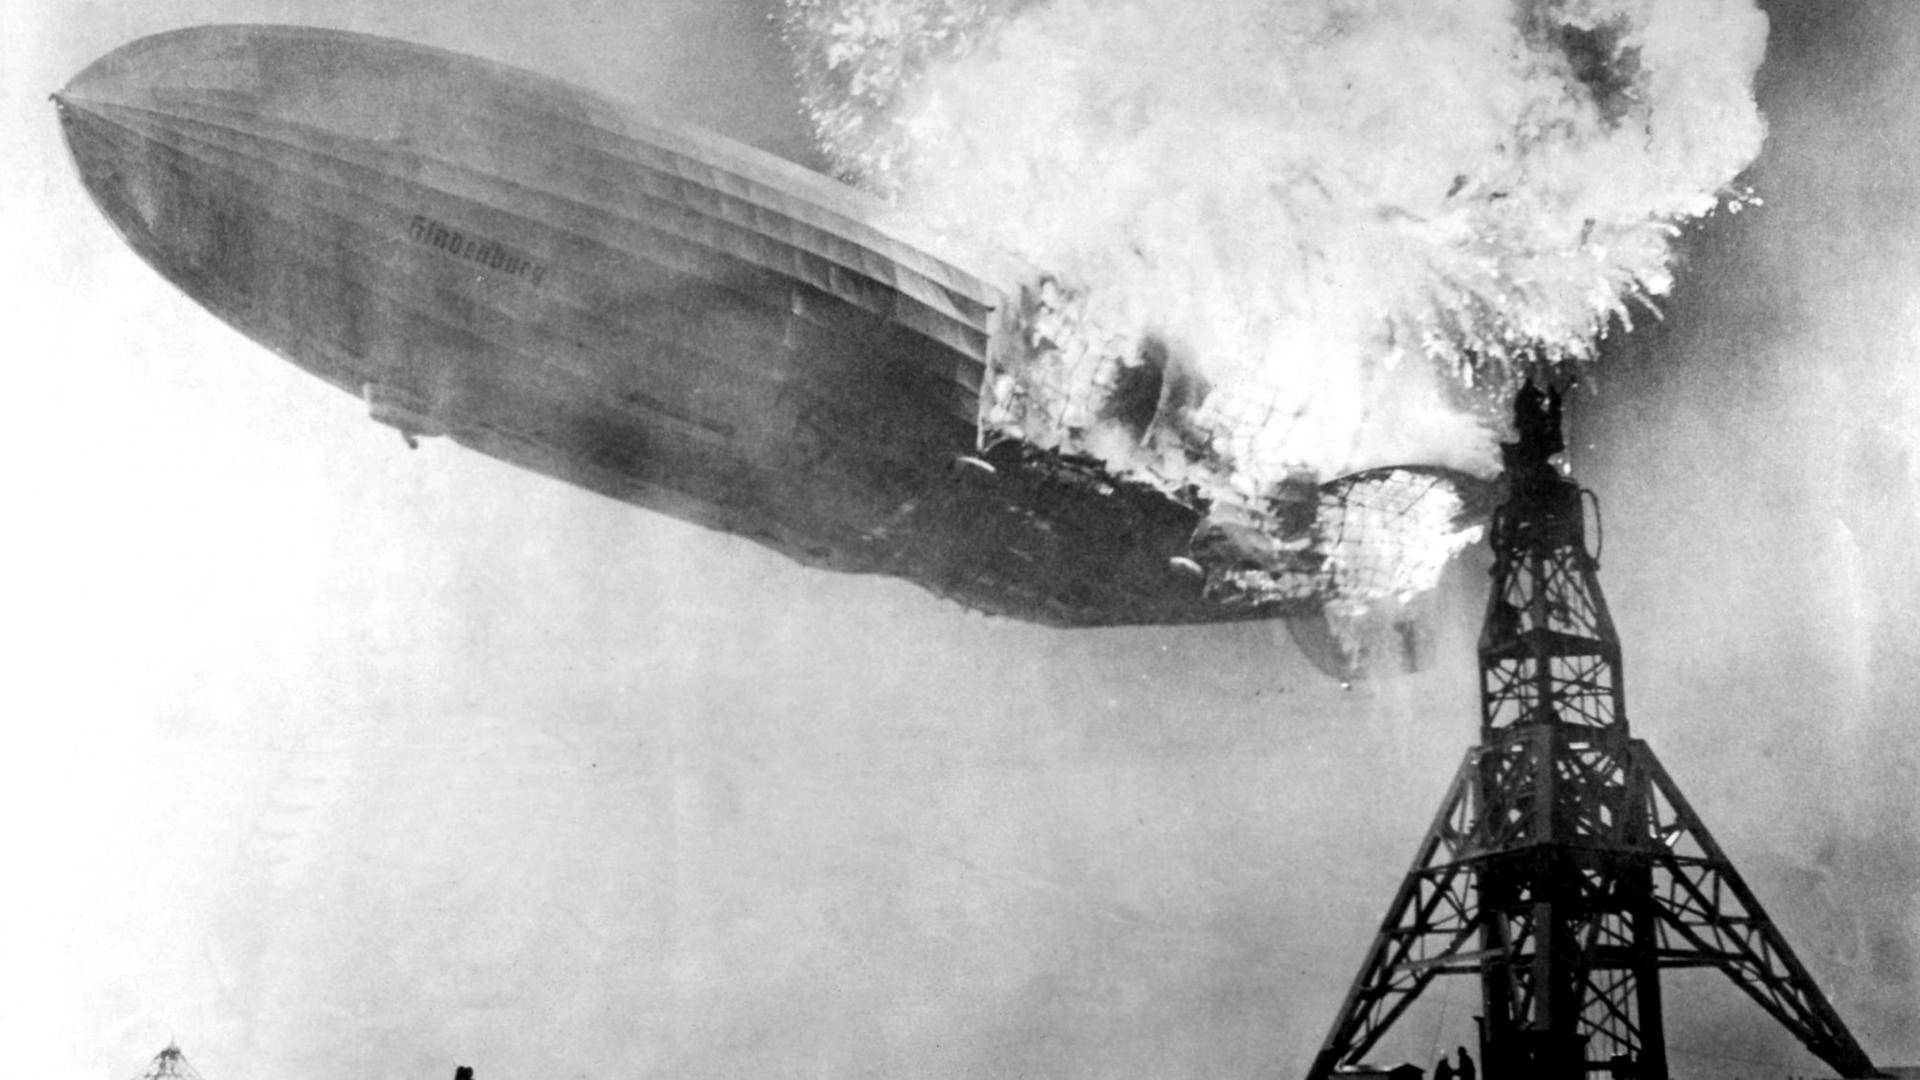 Am 6. Mai 1937 verunglückt der Zeppelin "Hindenburg" bei der Landung auf einem Luftschiffhafen